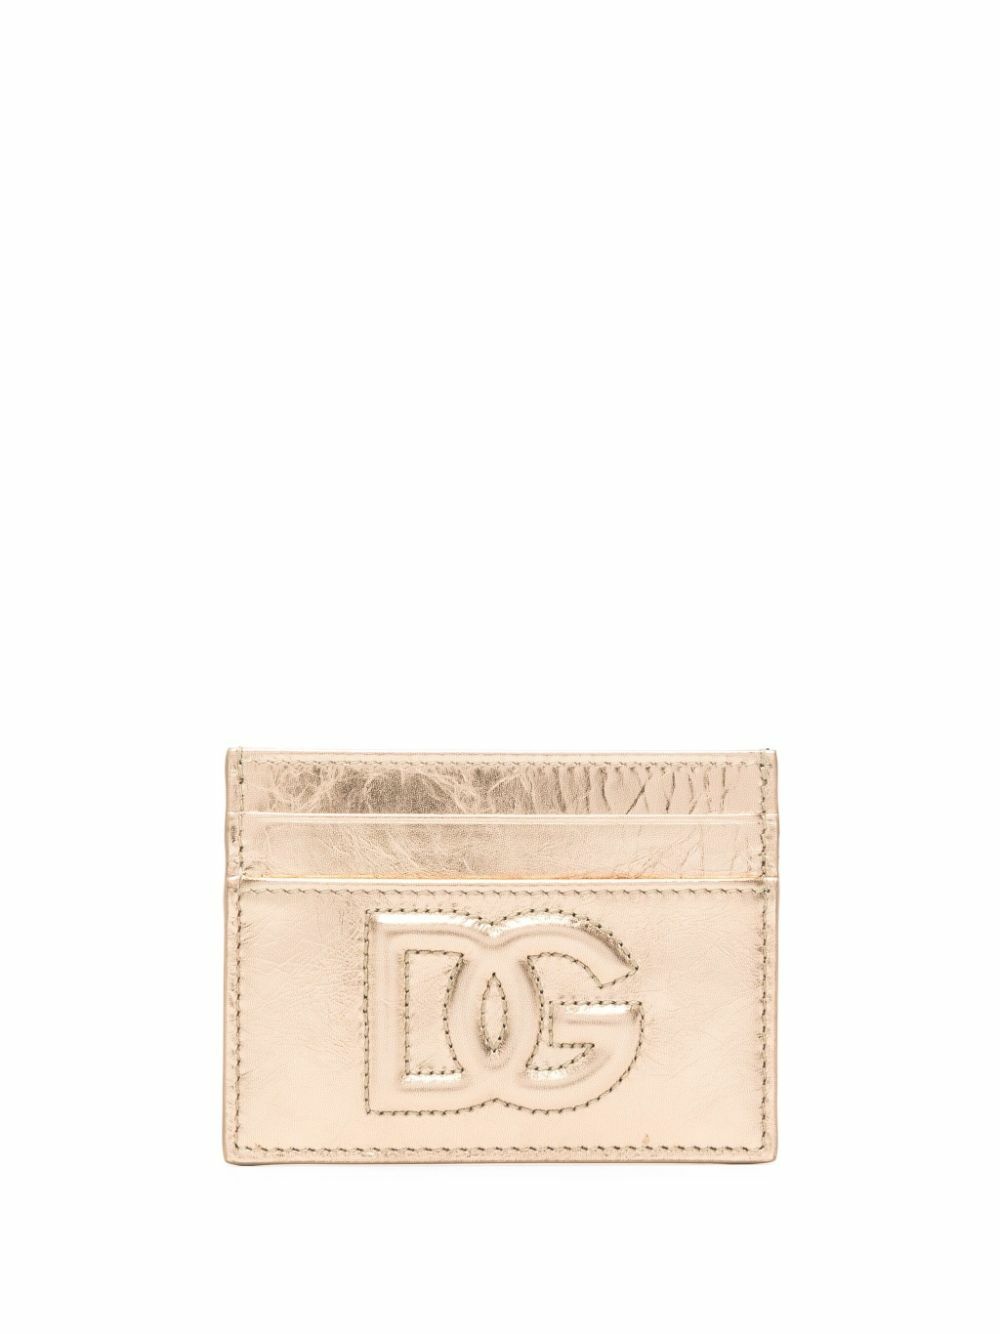 DOLCE & GABBANA - Logo Leather Credit Card Case Dolce & Gabbana